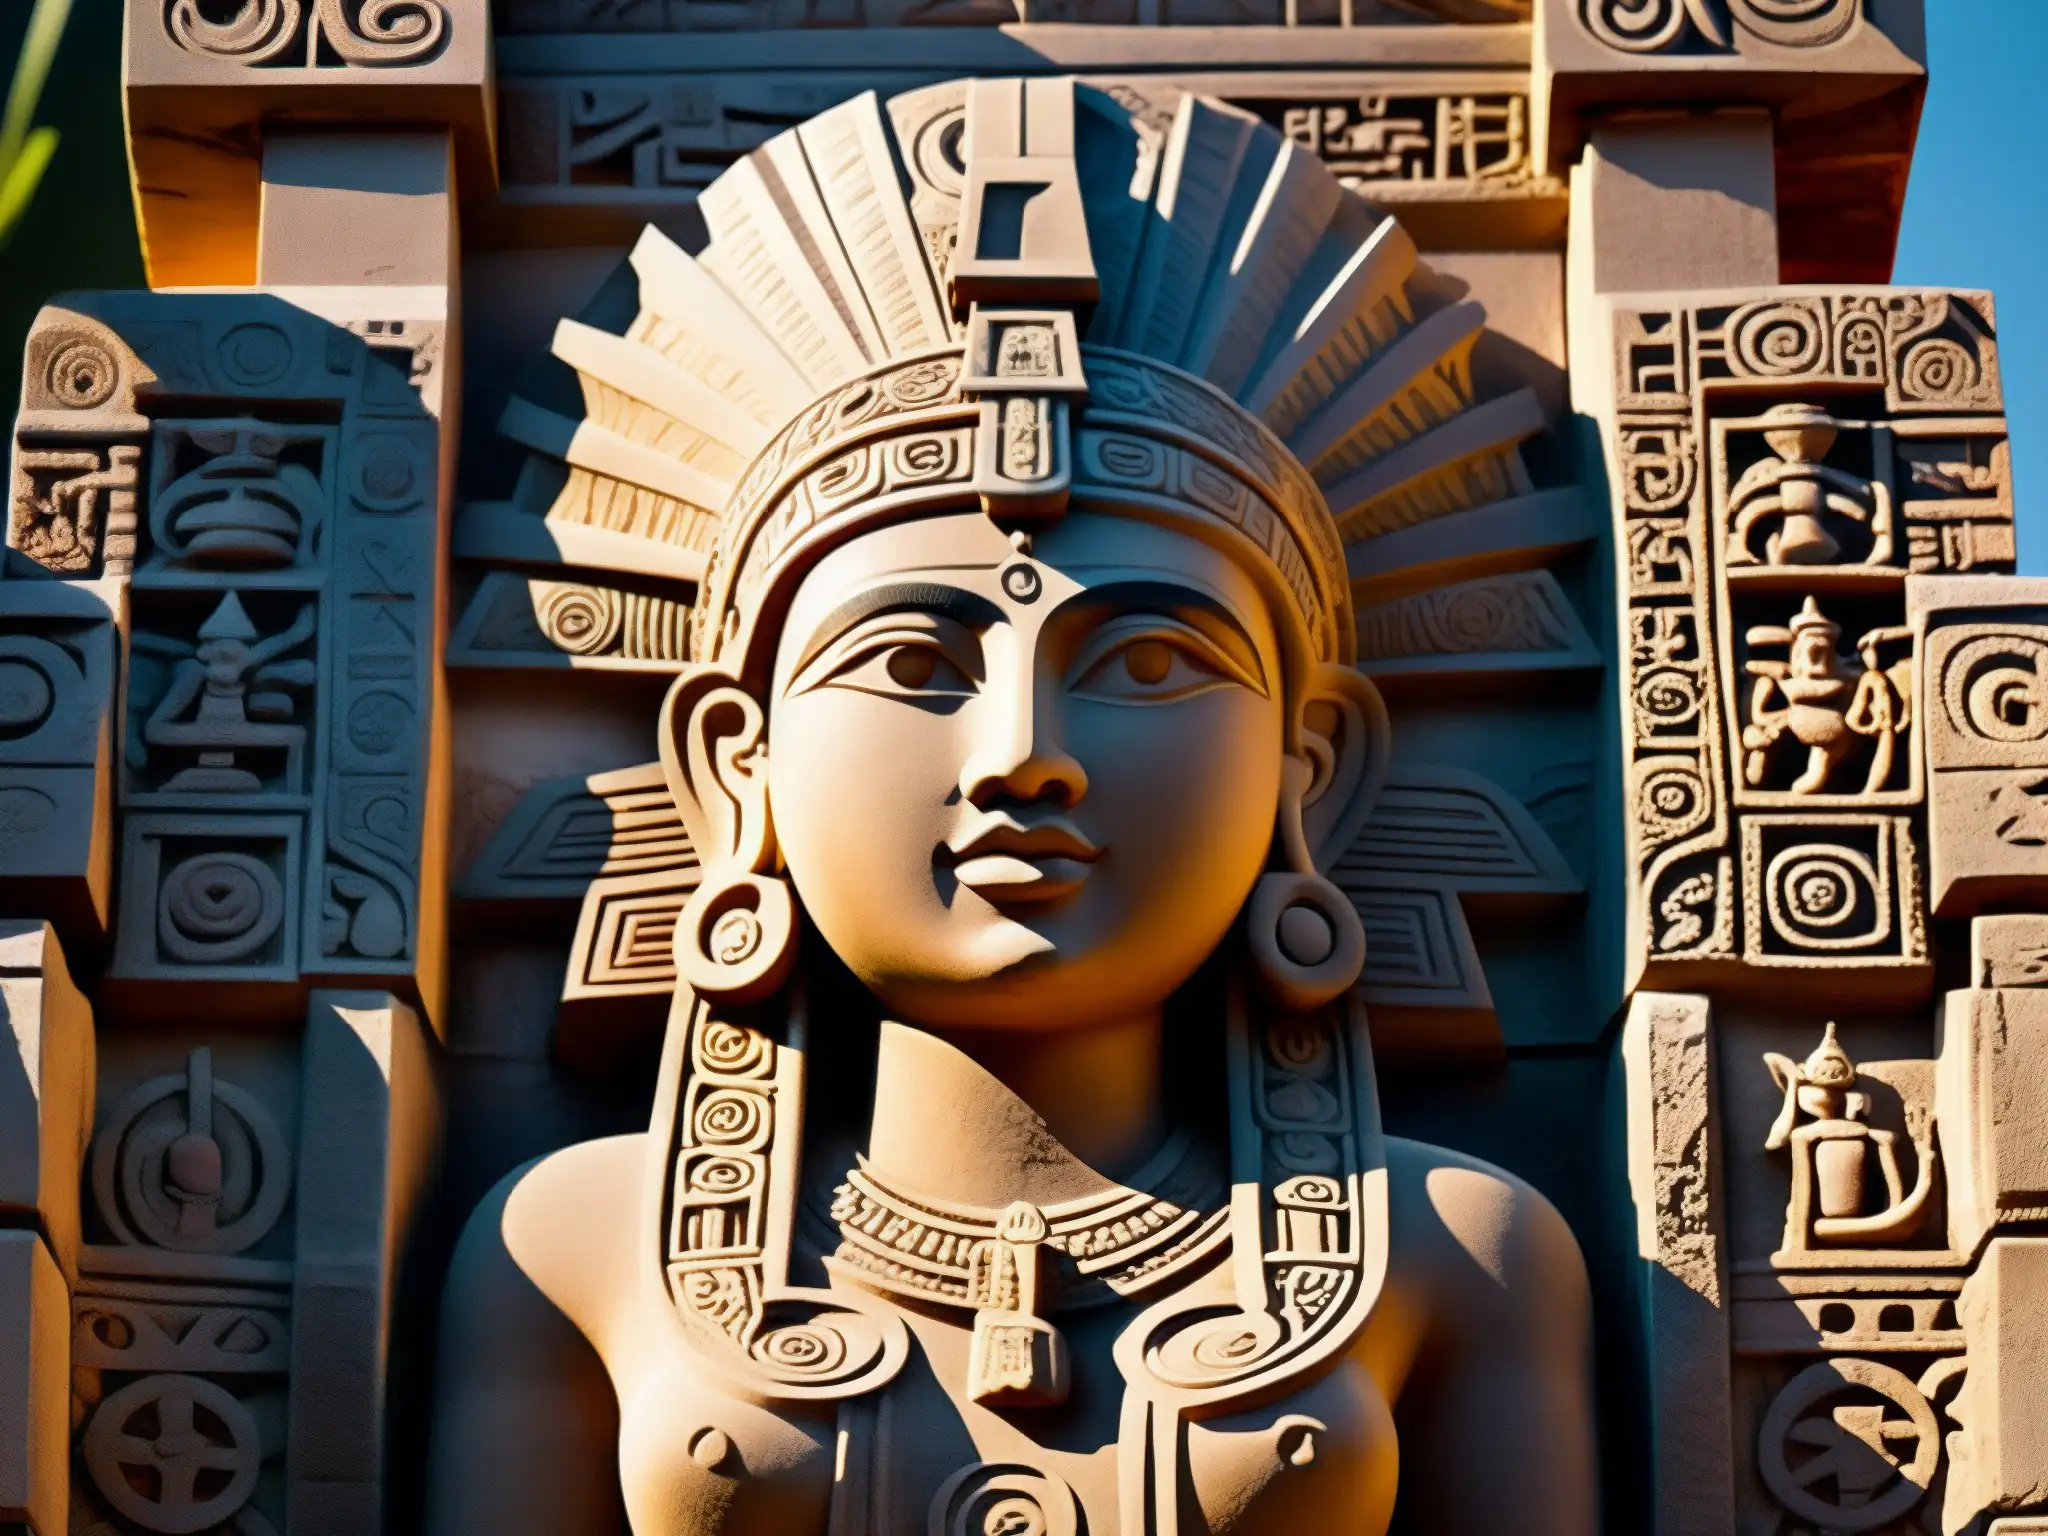 Escultura de la diosa Tlazolteotl en ruinas antiguas de México, simbolizando el mito de la mujer herrada y el castigo divino